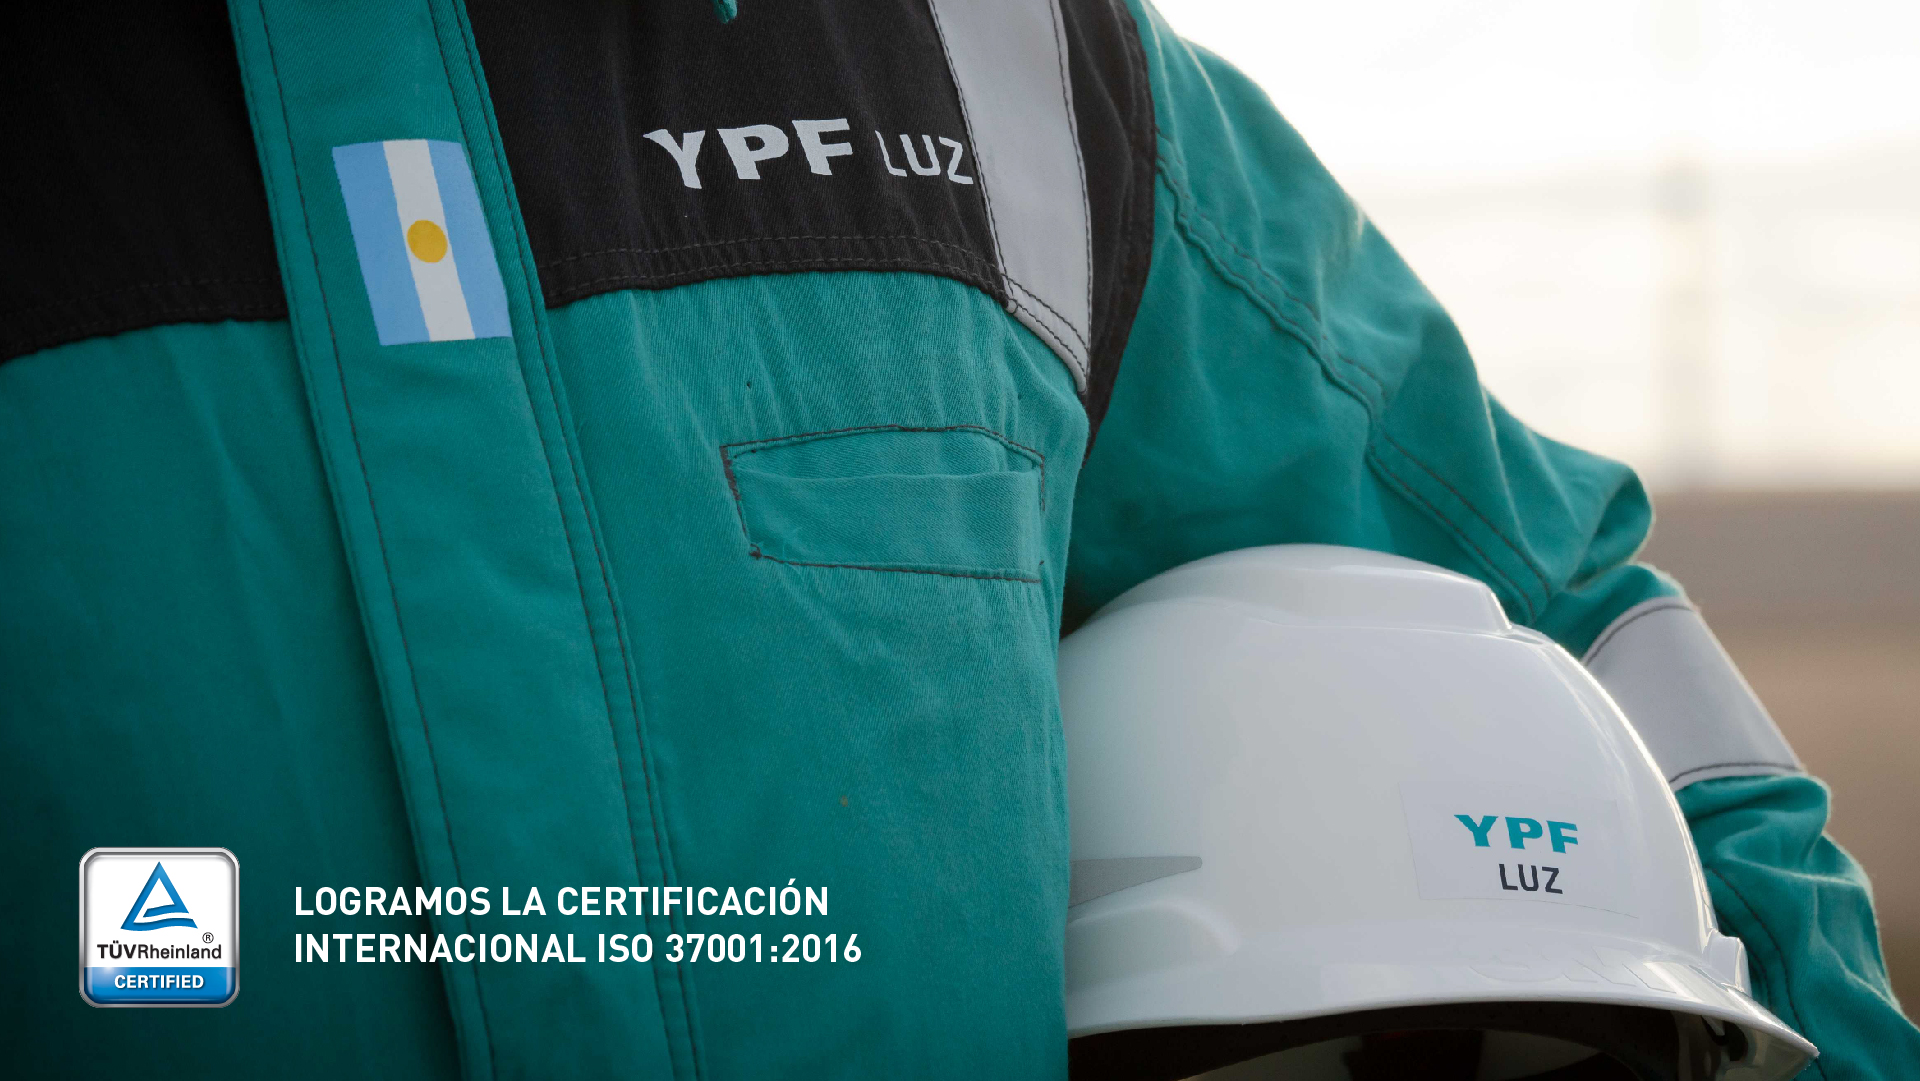 YPF Luz logró la Certificación Internacional ISO 37001:2016 para el 100% de sus operaciones